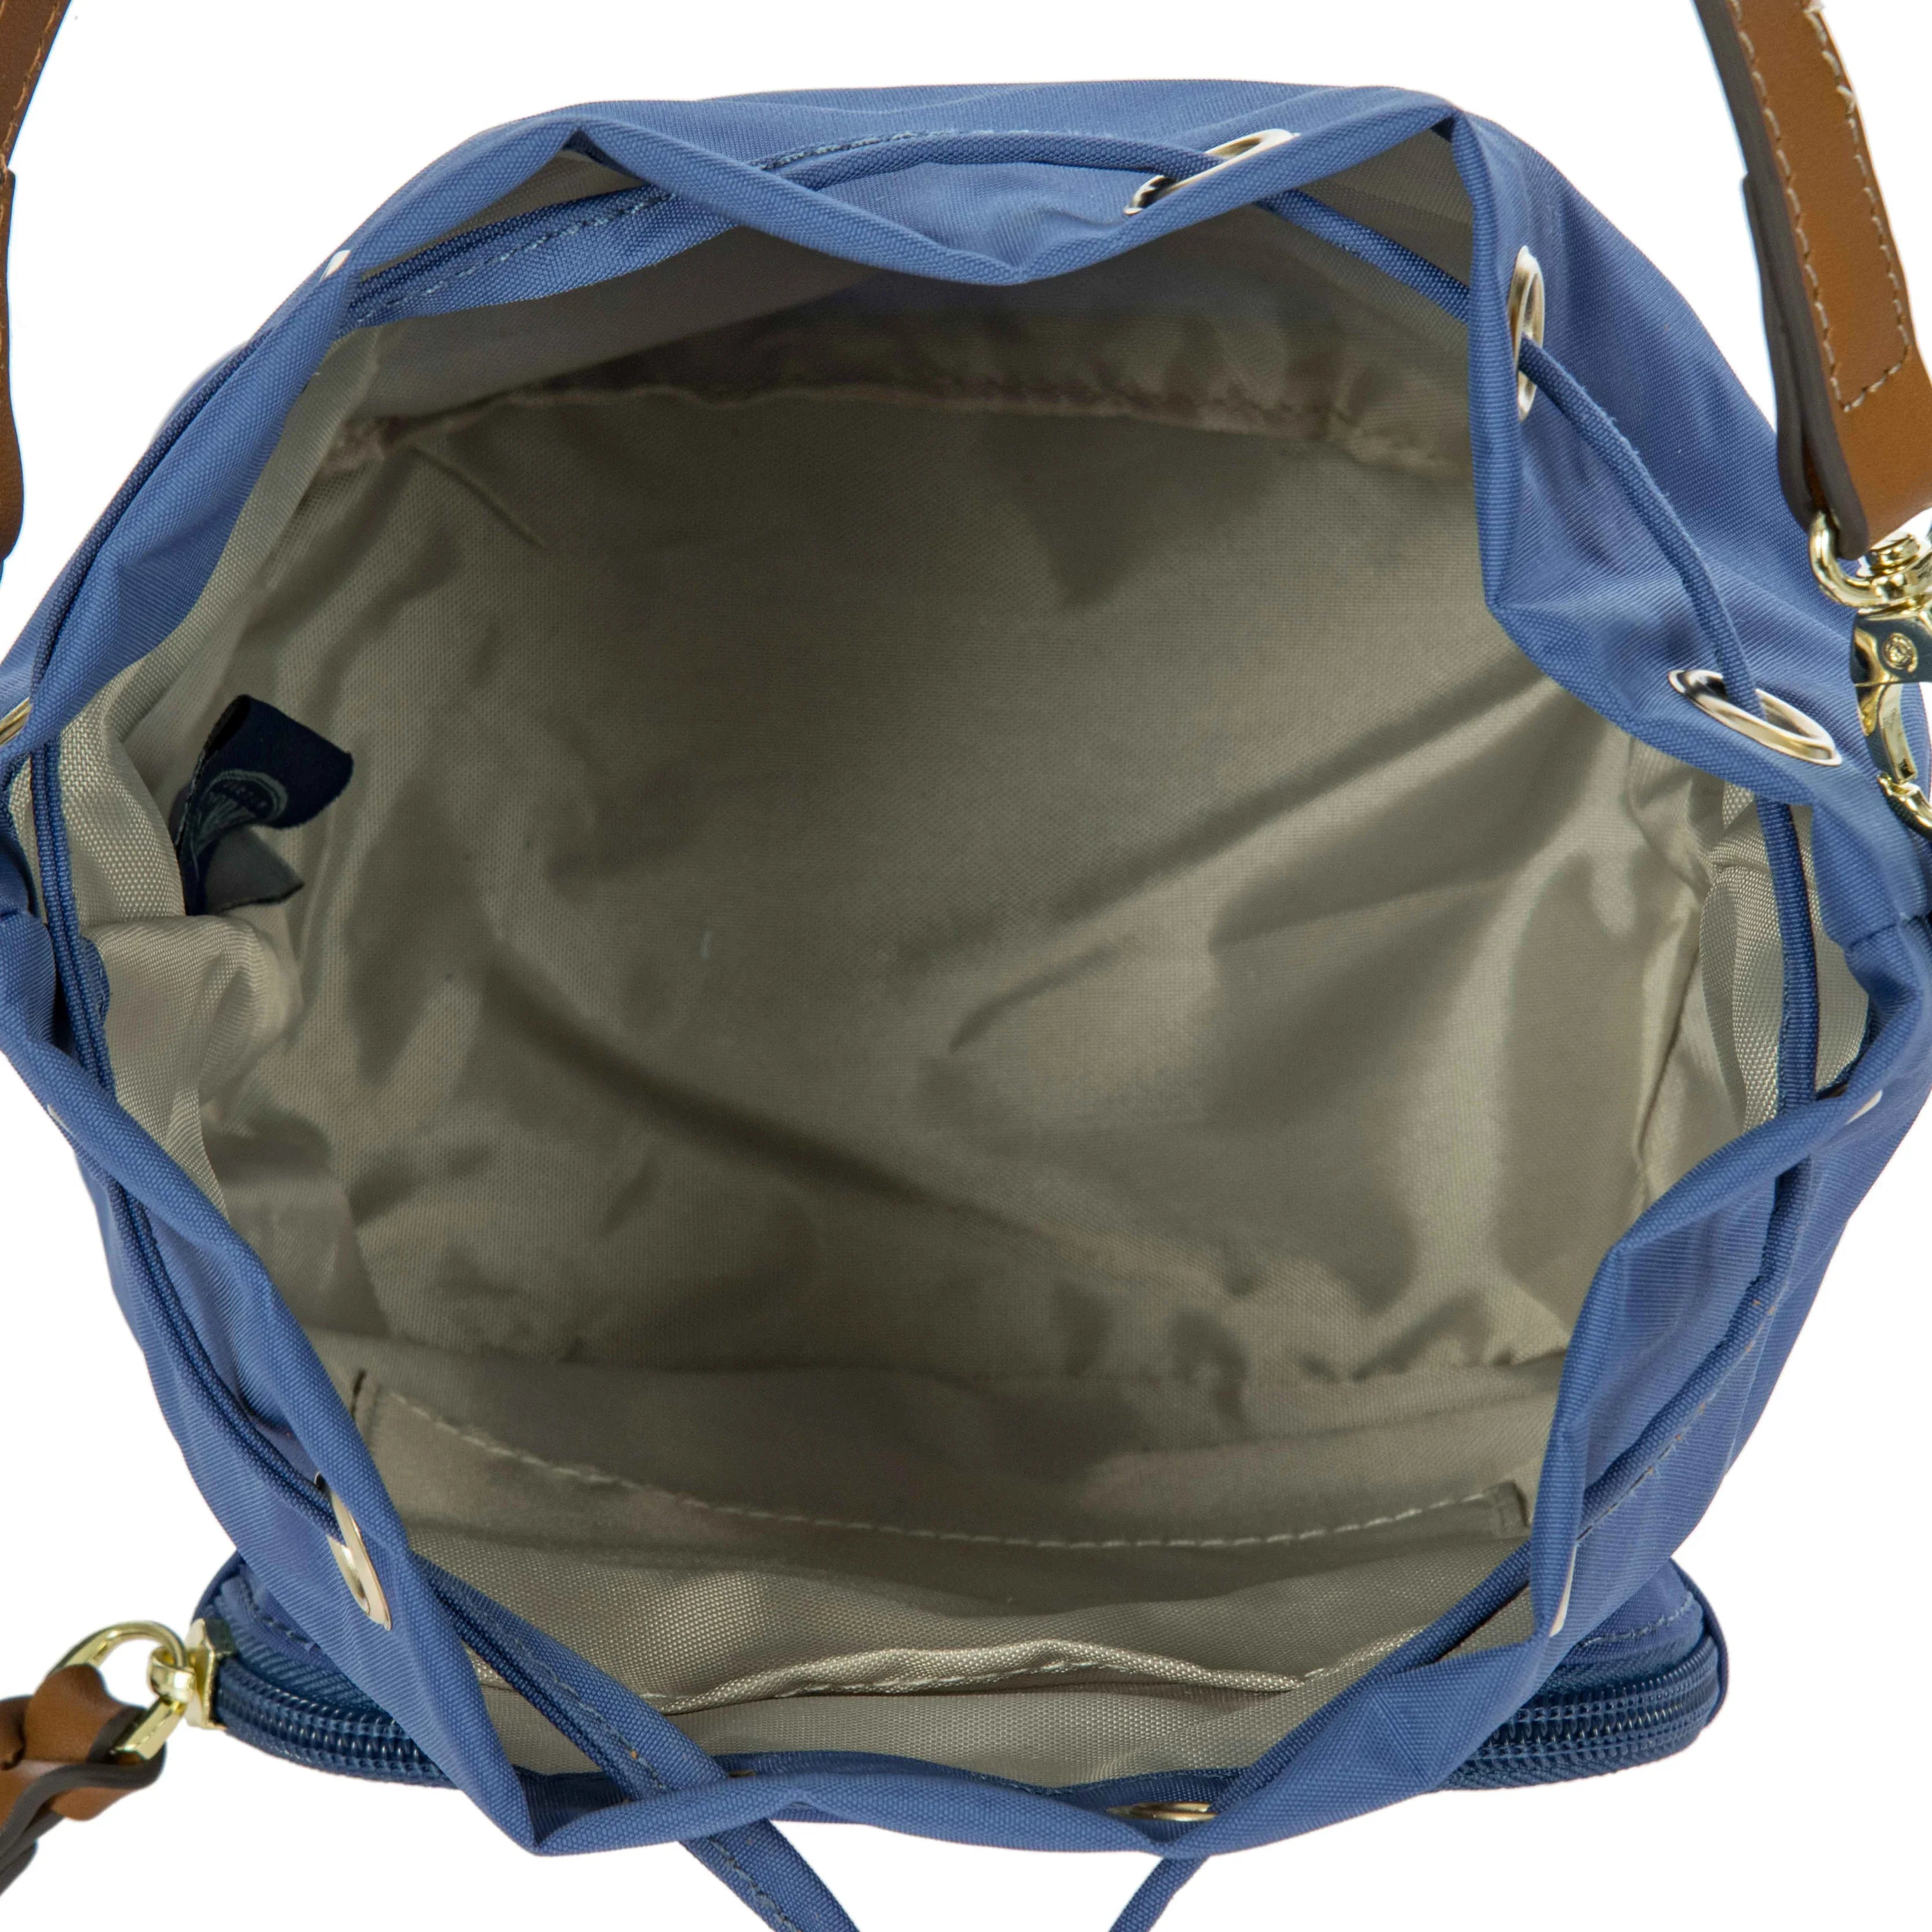 Brics X-Bag Secchiello bag 20 cm - Navy